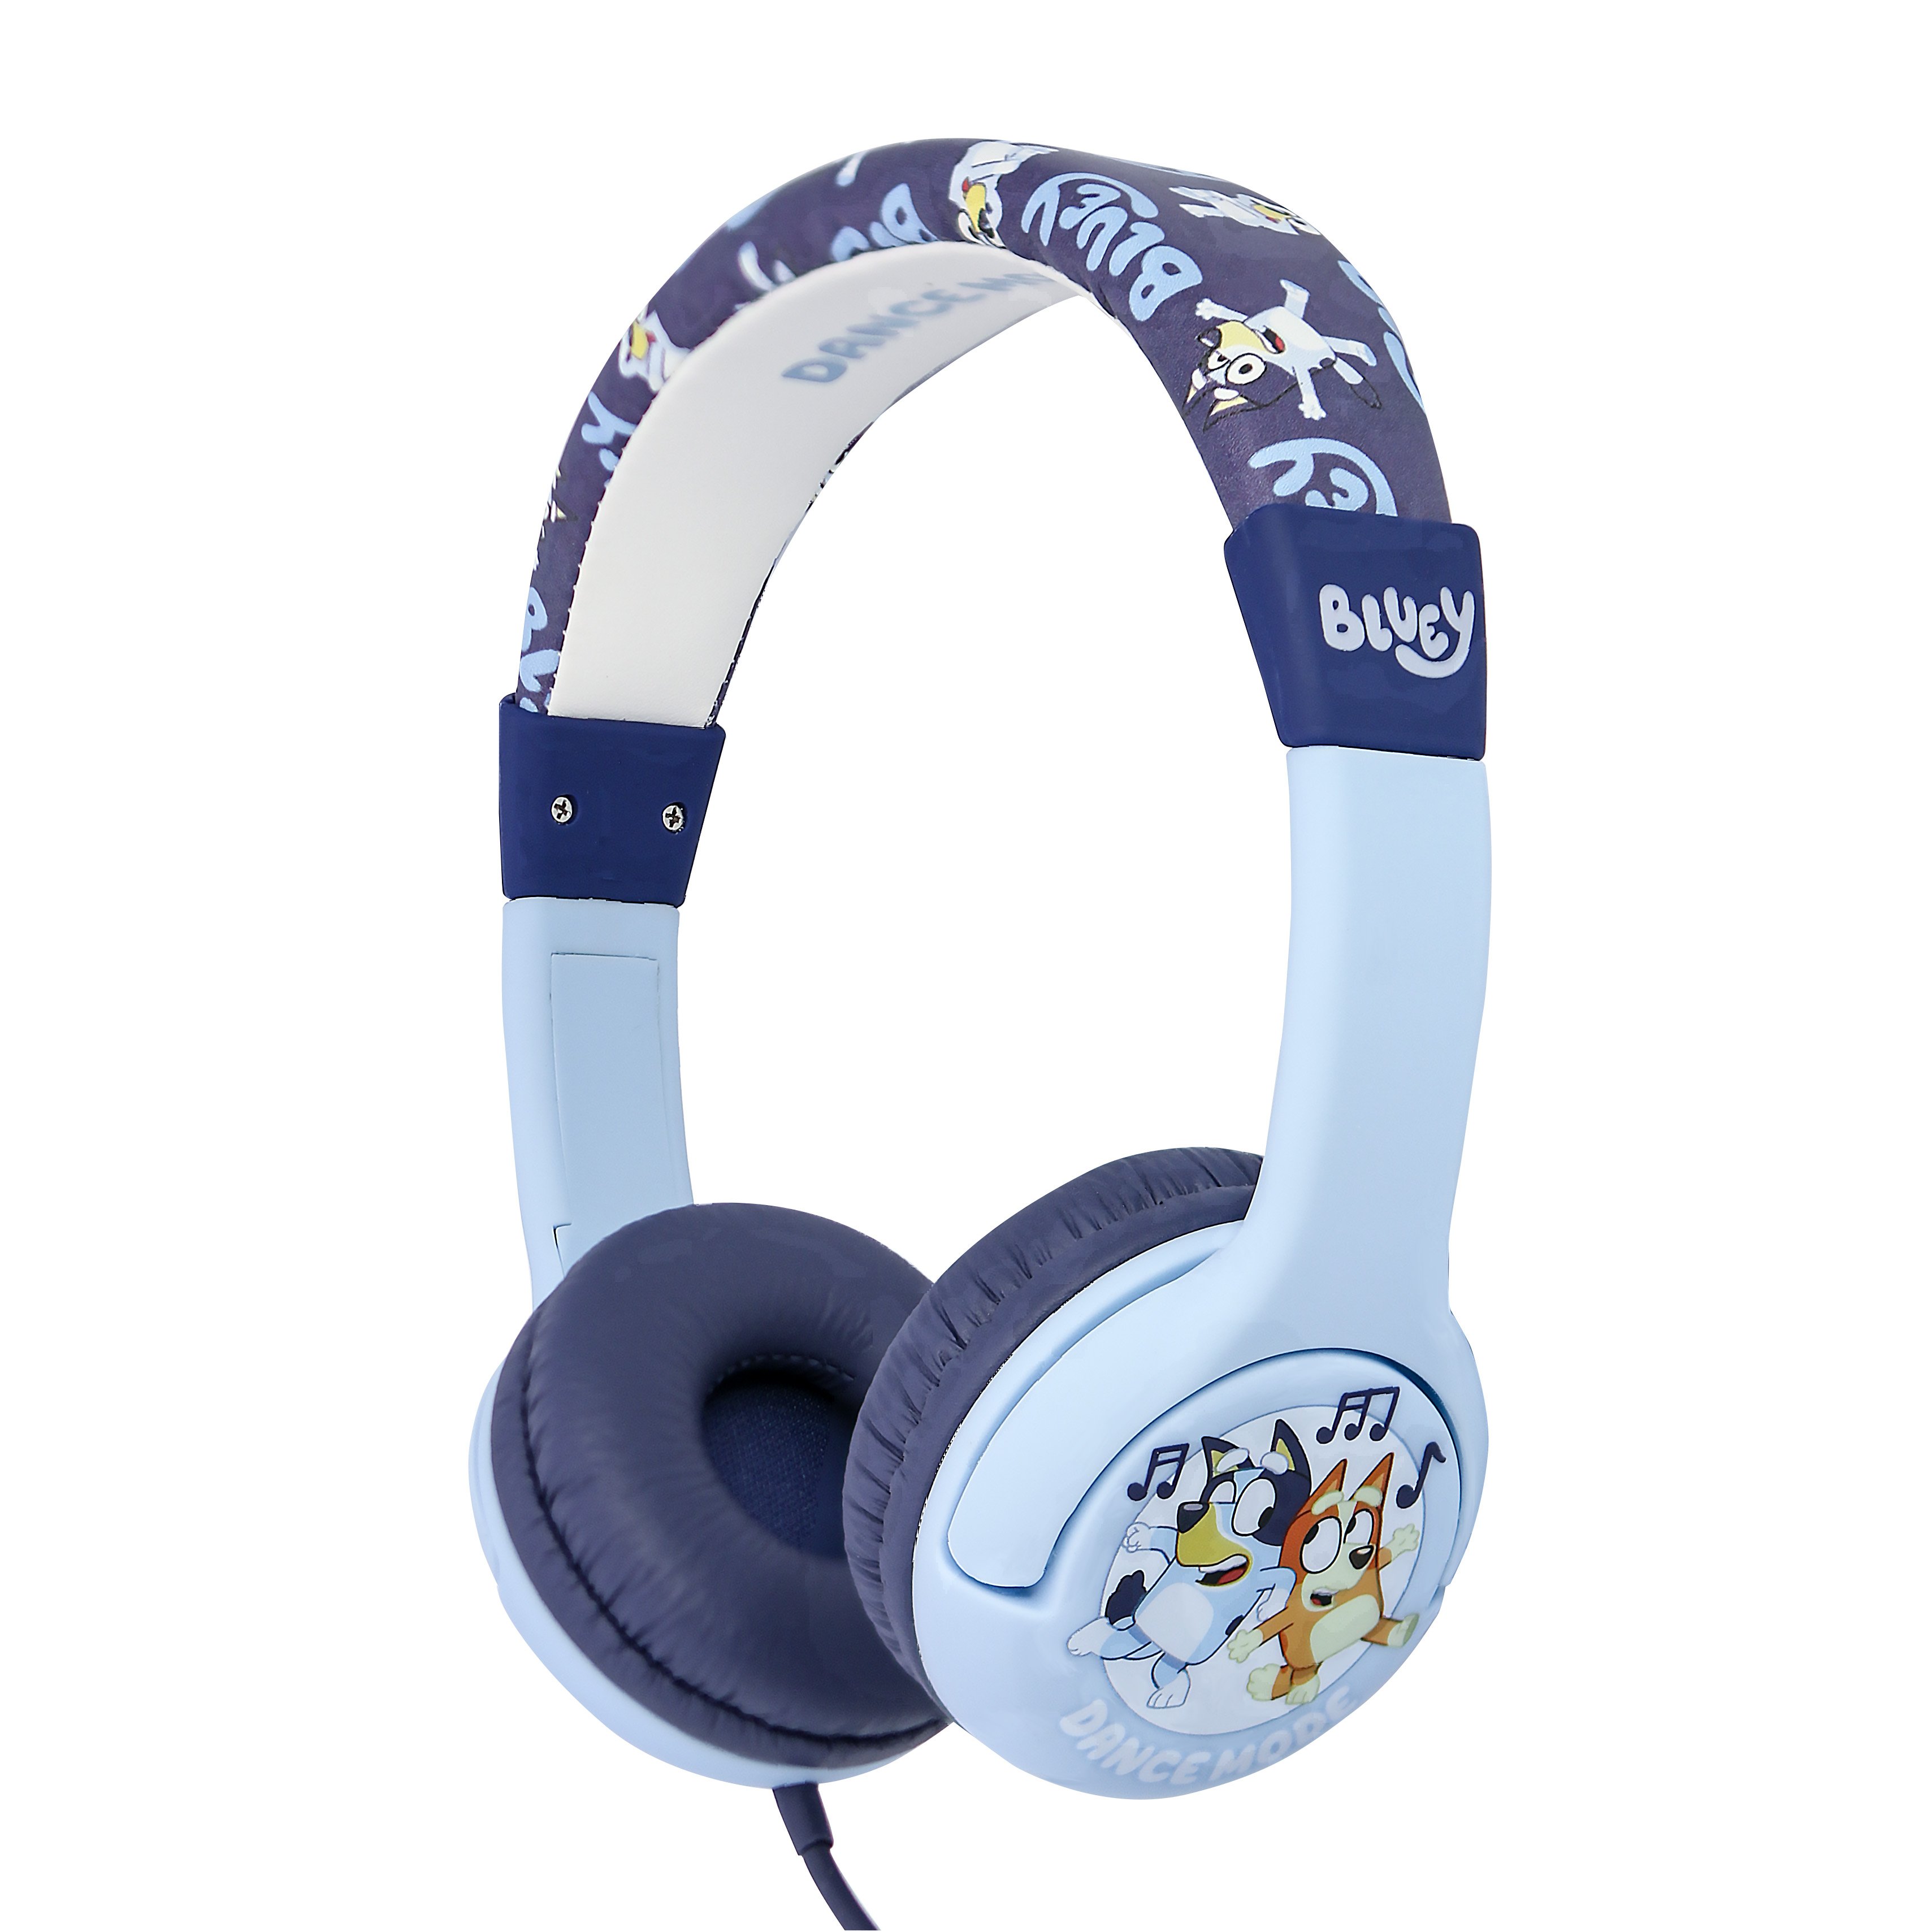 OTL - Bluey childrens headphones - Leker